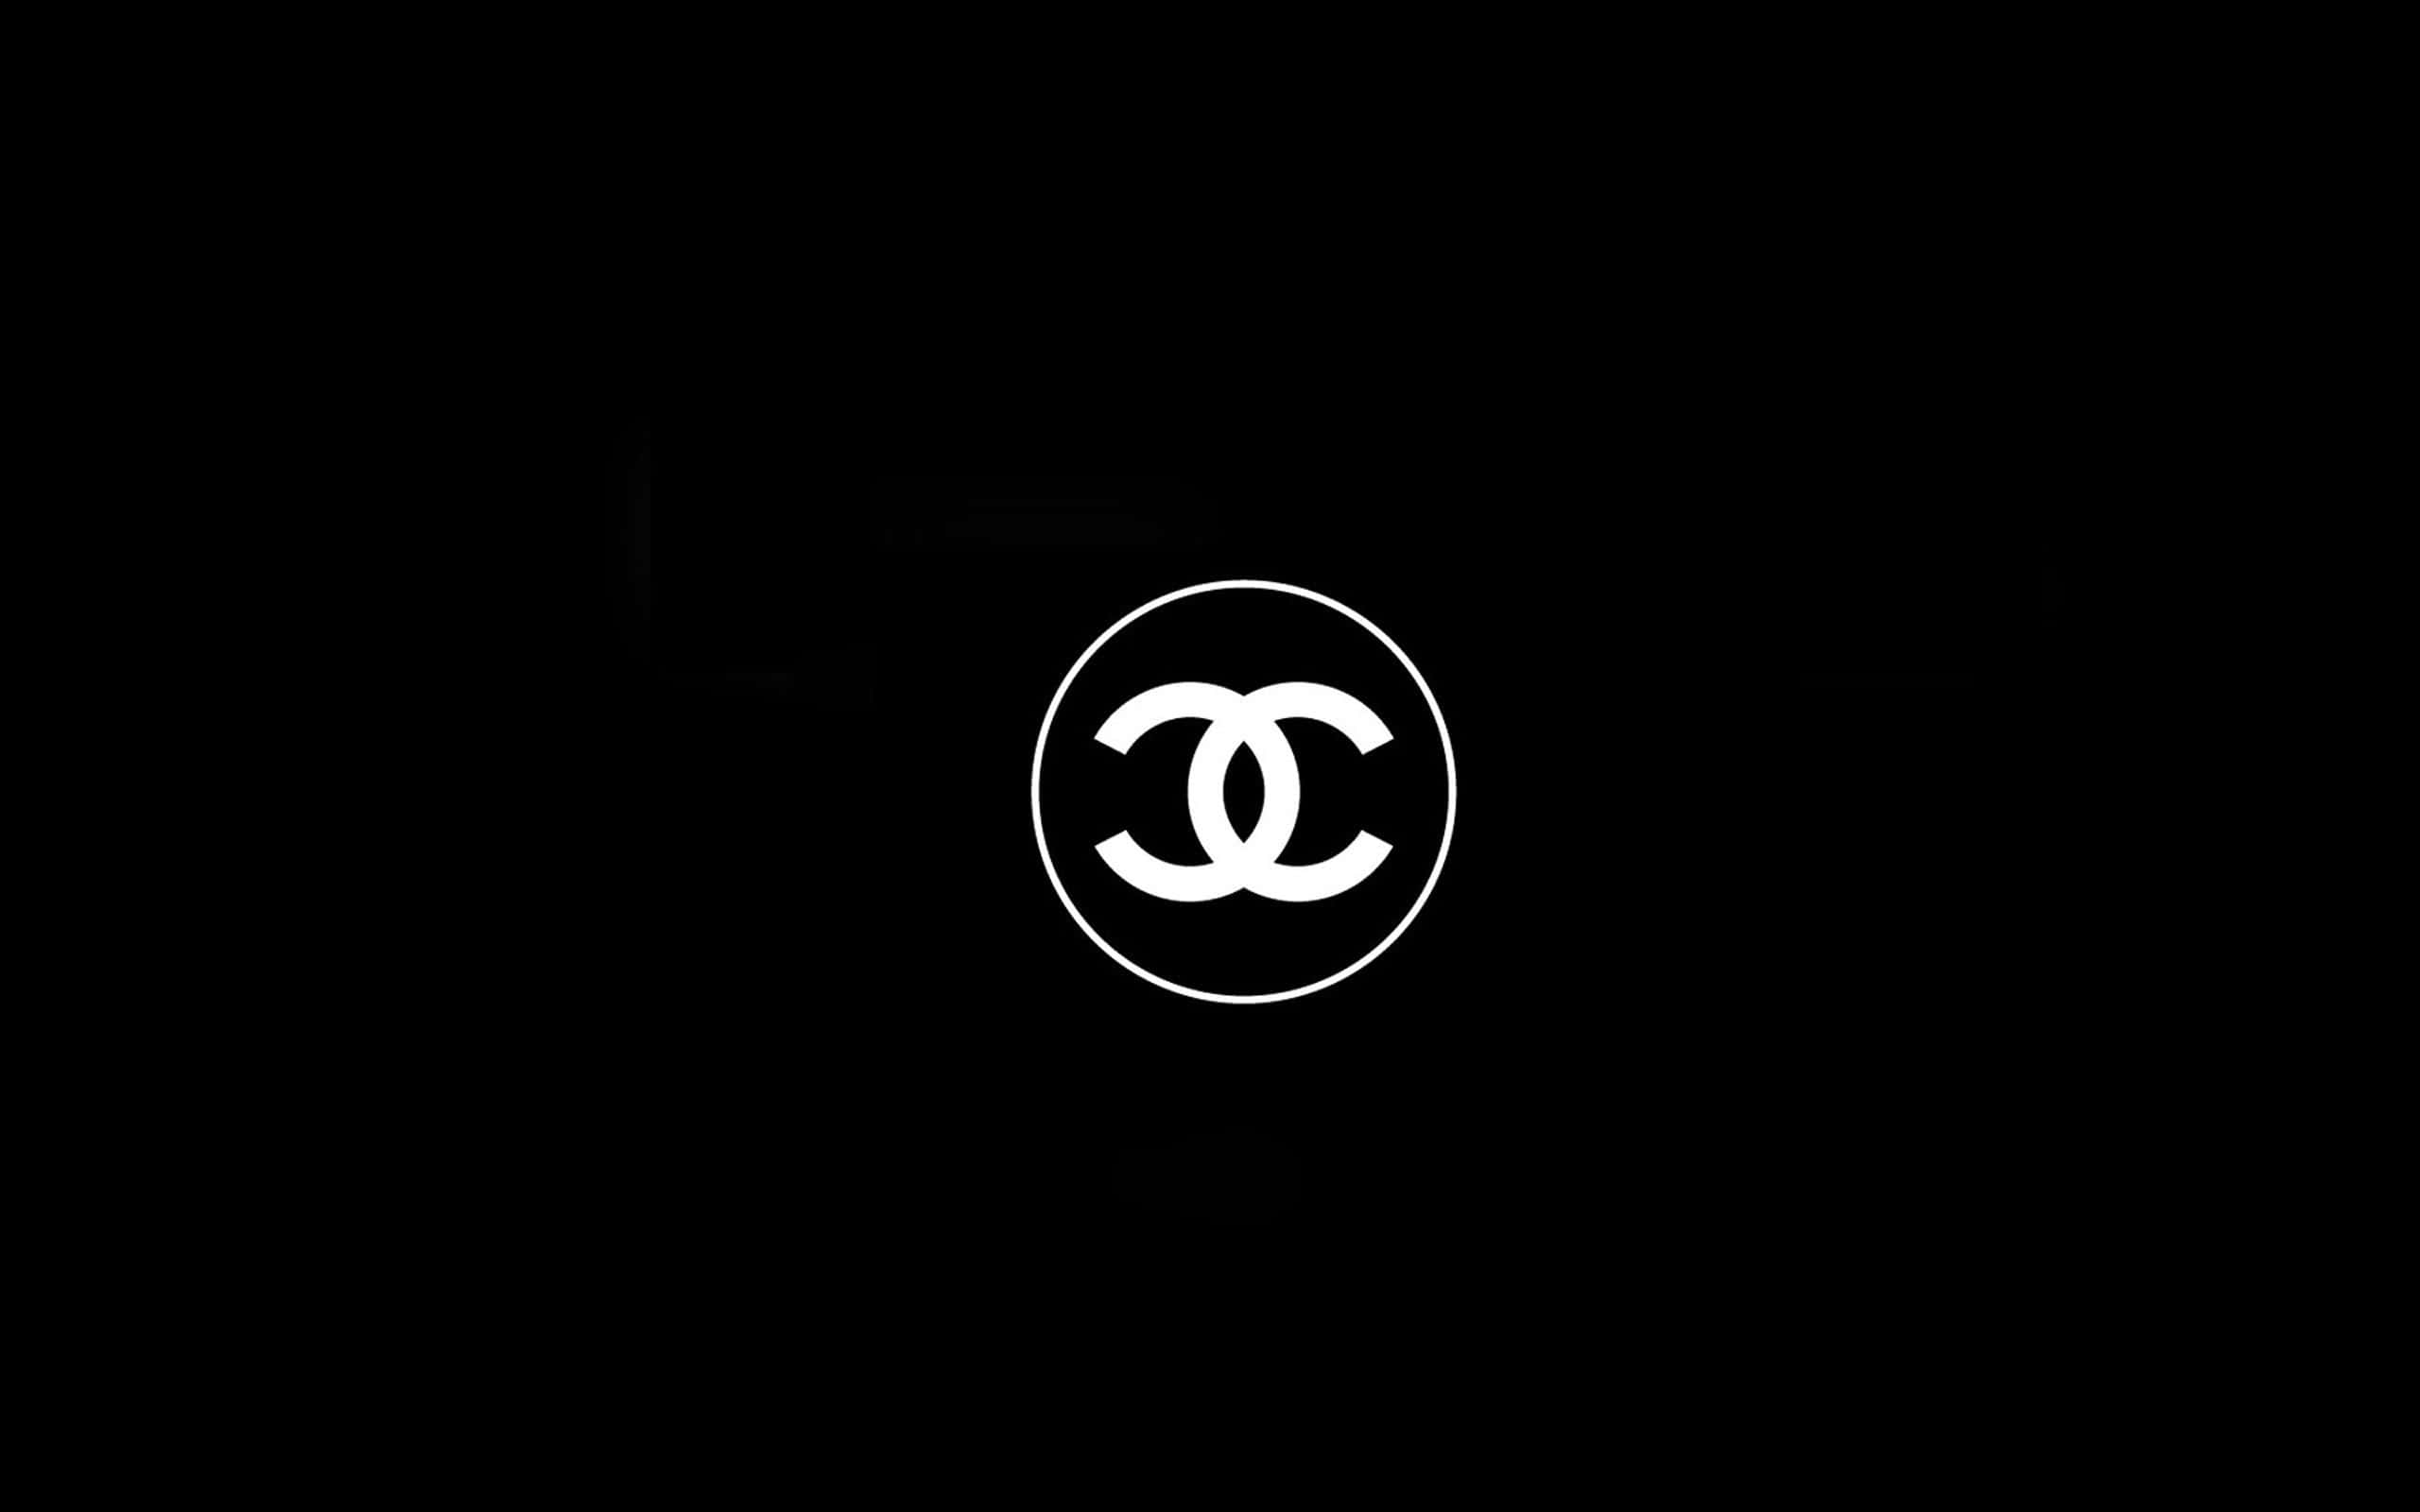 Ф на черном фоне. Коко Шанель знак бренда. Логотип на черном фоне. Coco Chanel логотип. Надпись Chanel на черном фоне.